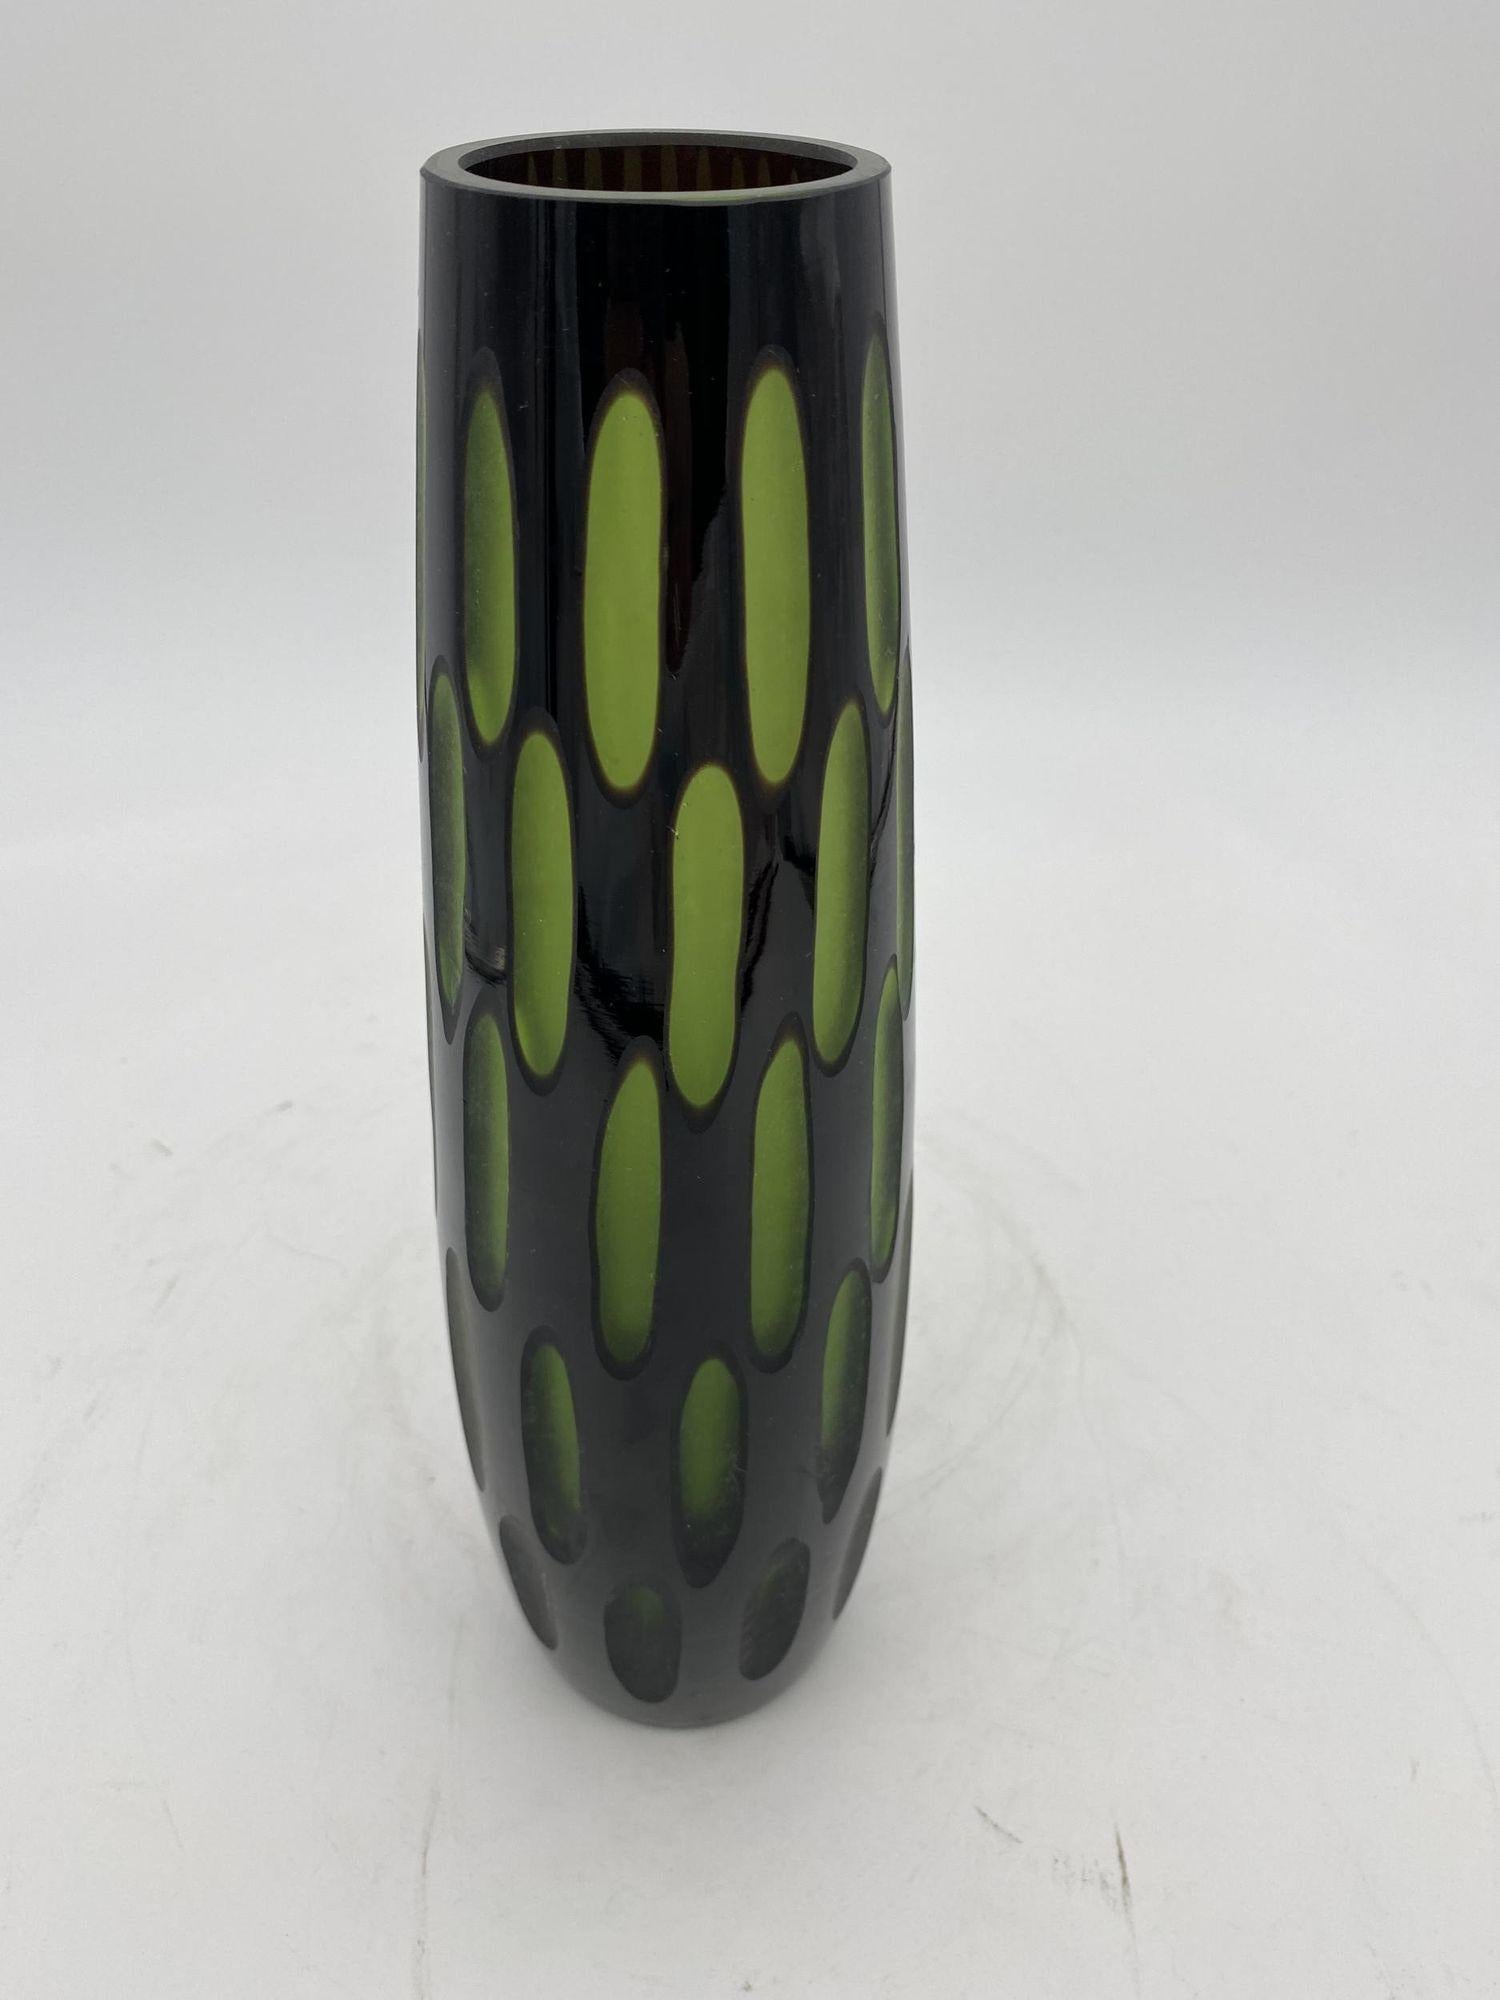 Vase original des années 1960 en verre de Murano taillé en deux tons noir/vert et à deux couches. Le vase se caractérise par une couleur extérieure noire et une couche intérieure verte qui semble se rapprocher lorsqu'elle est frappée par la lumière.